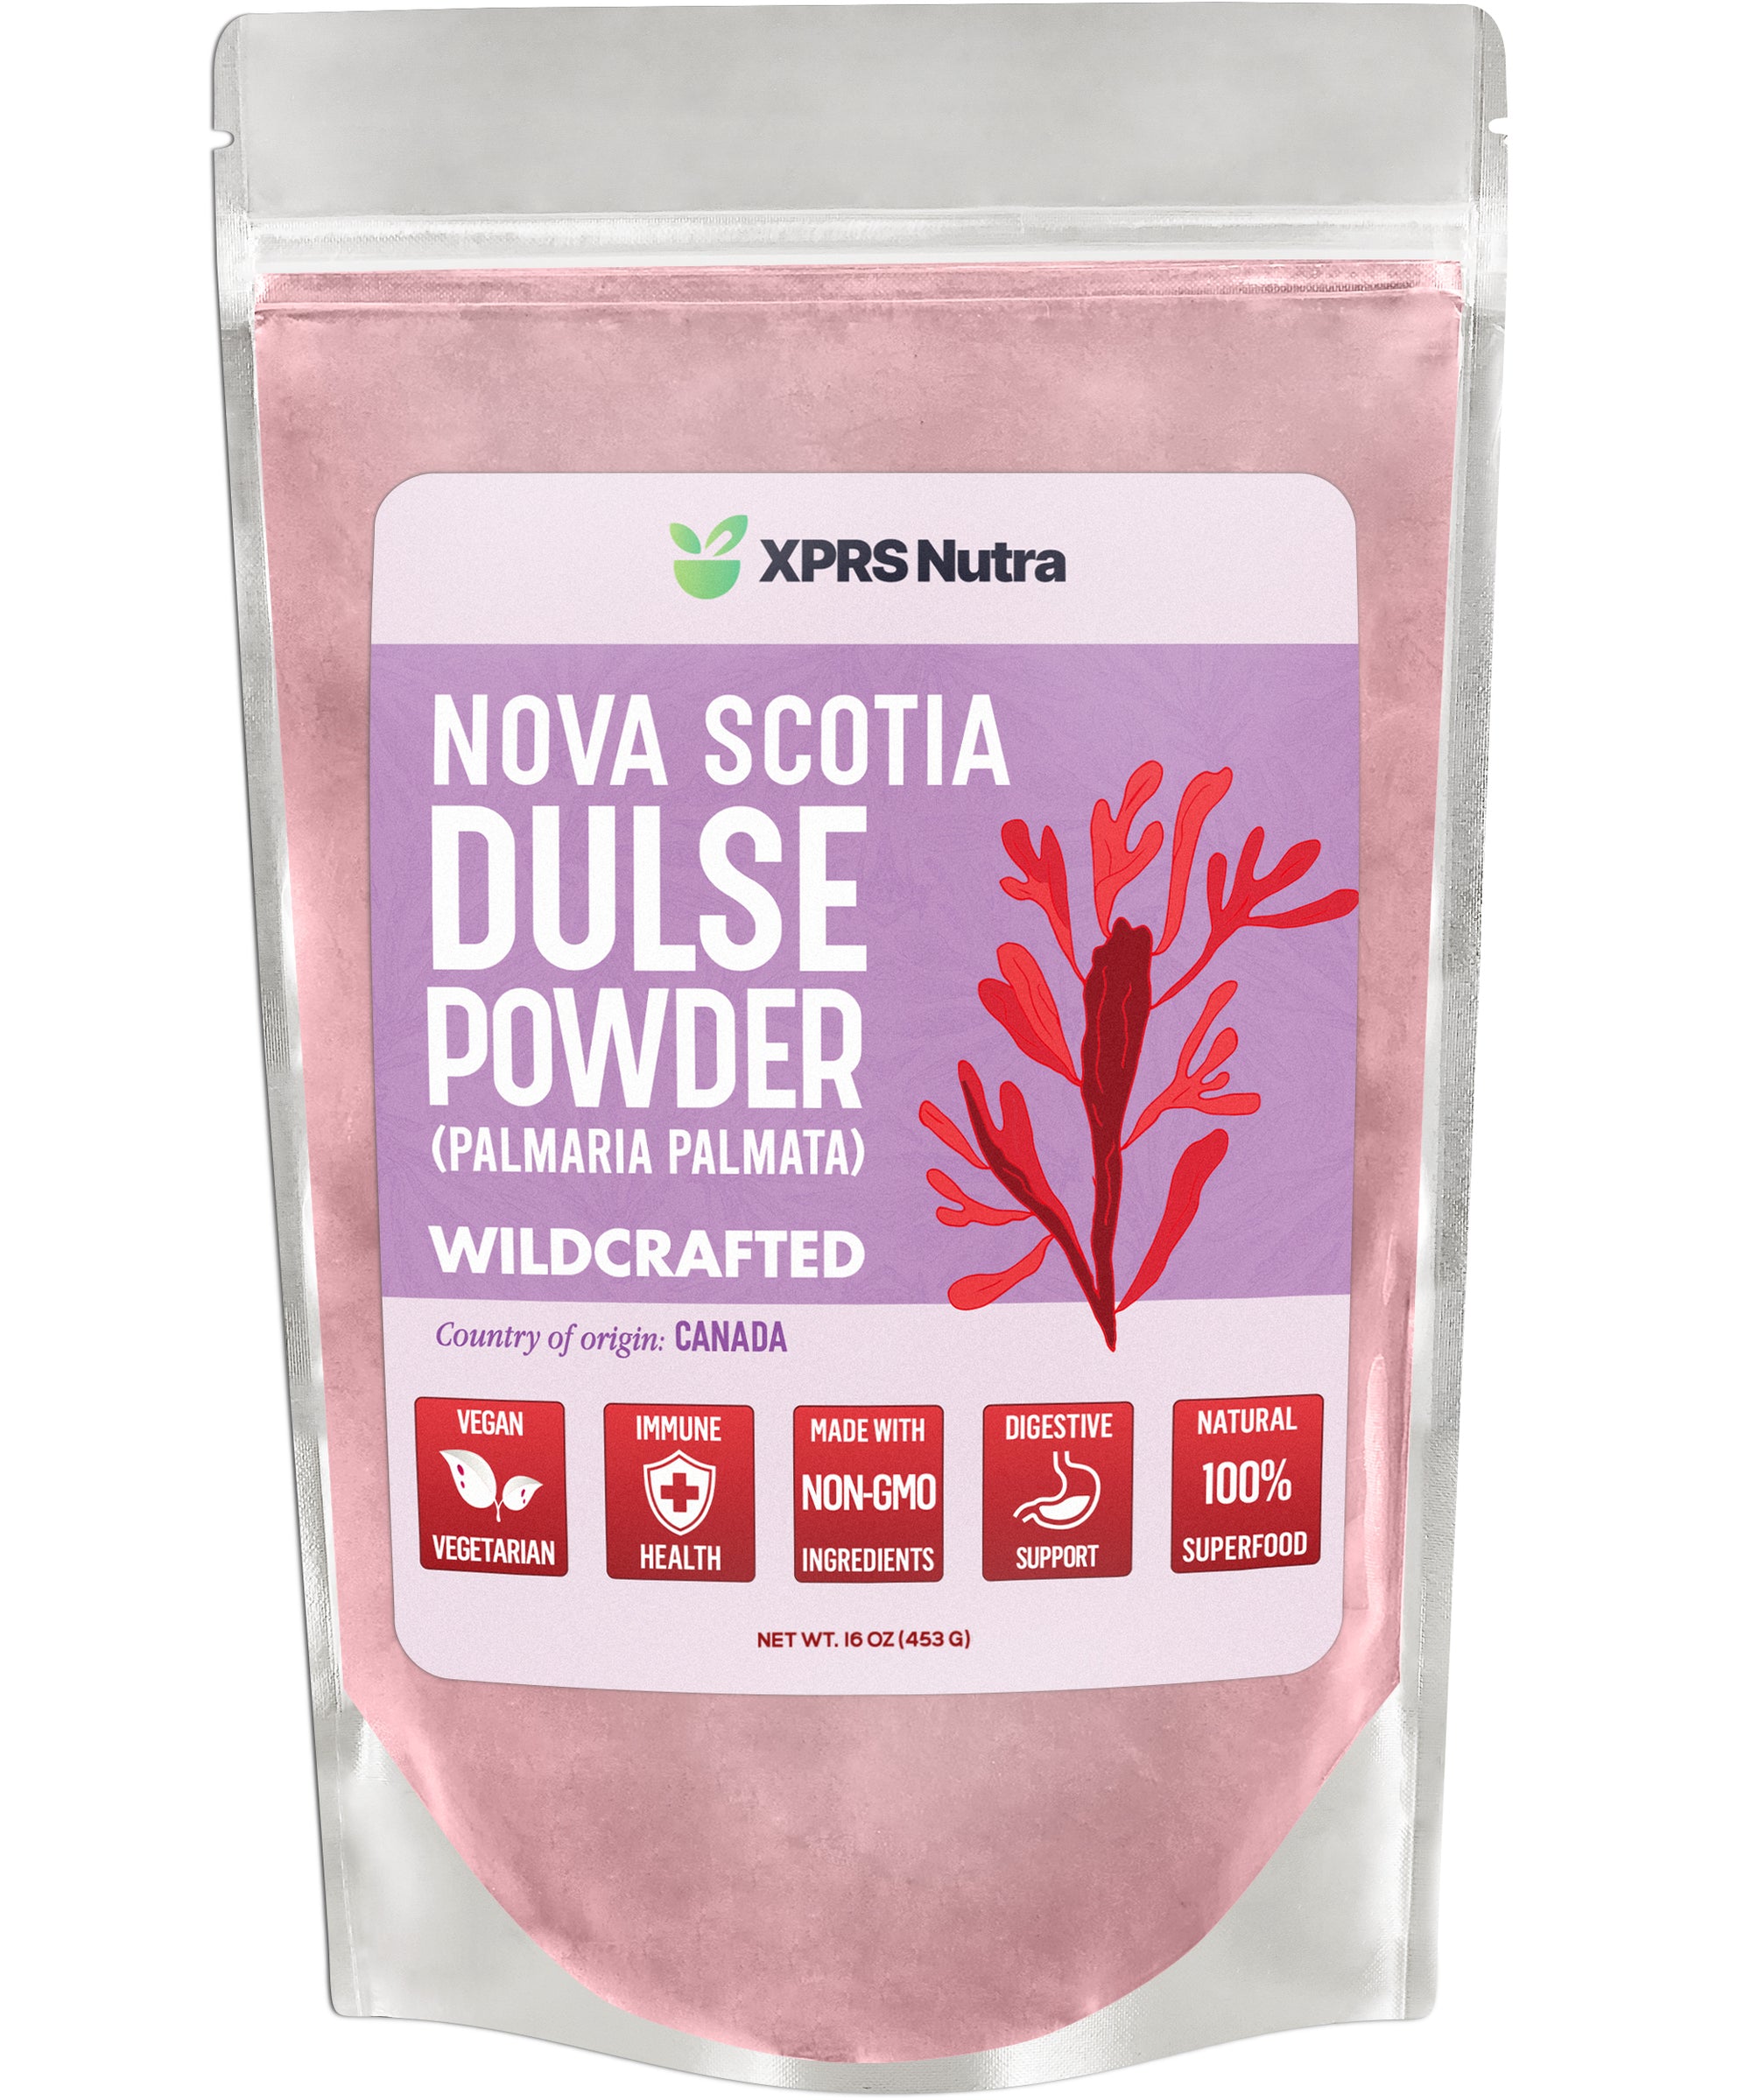 Wildcrafted Nova Scotia Dulse Powder